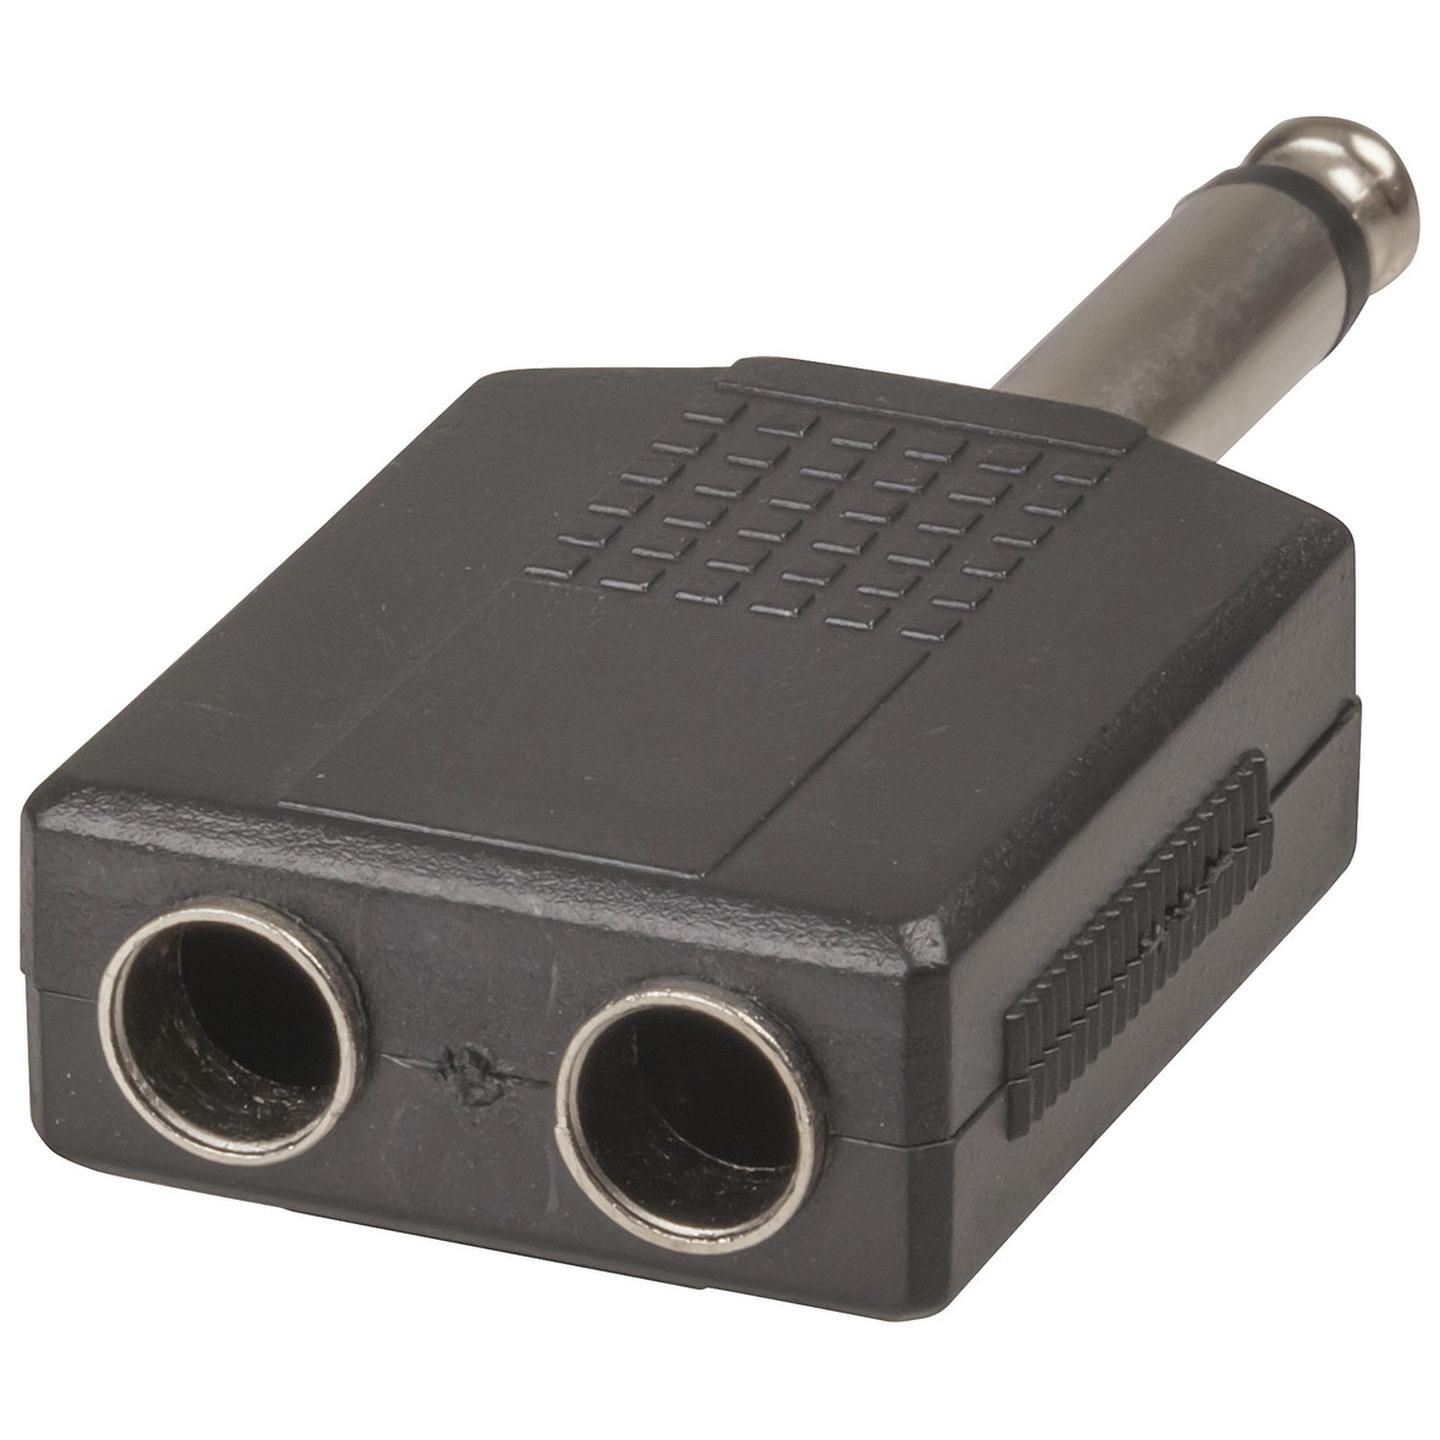 6.5mm Mono Plug to 2 X 6.5mm Mono Sockets Adaptor